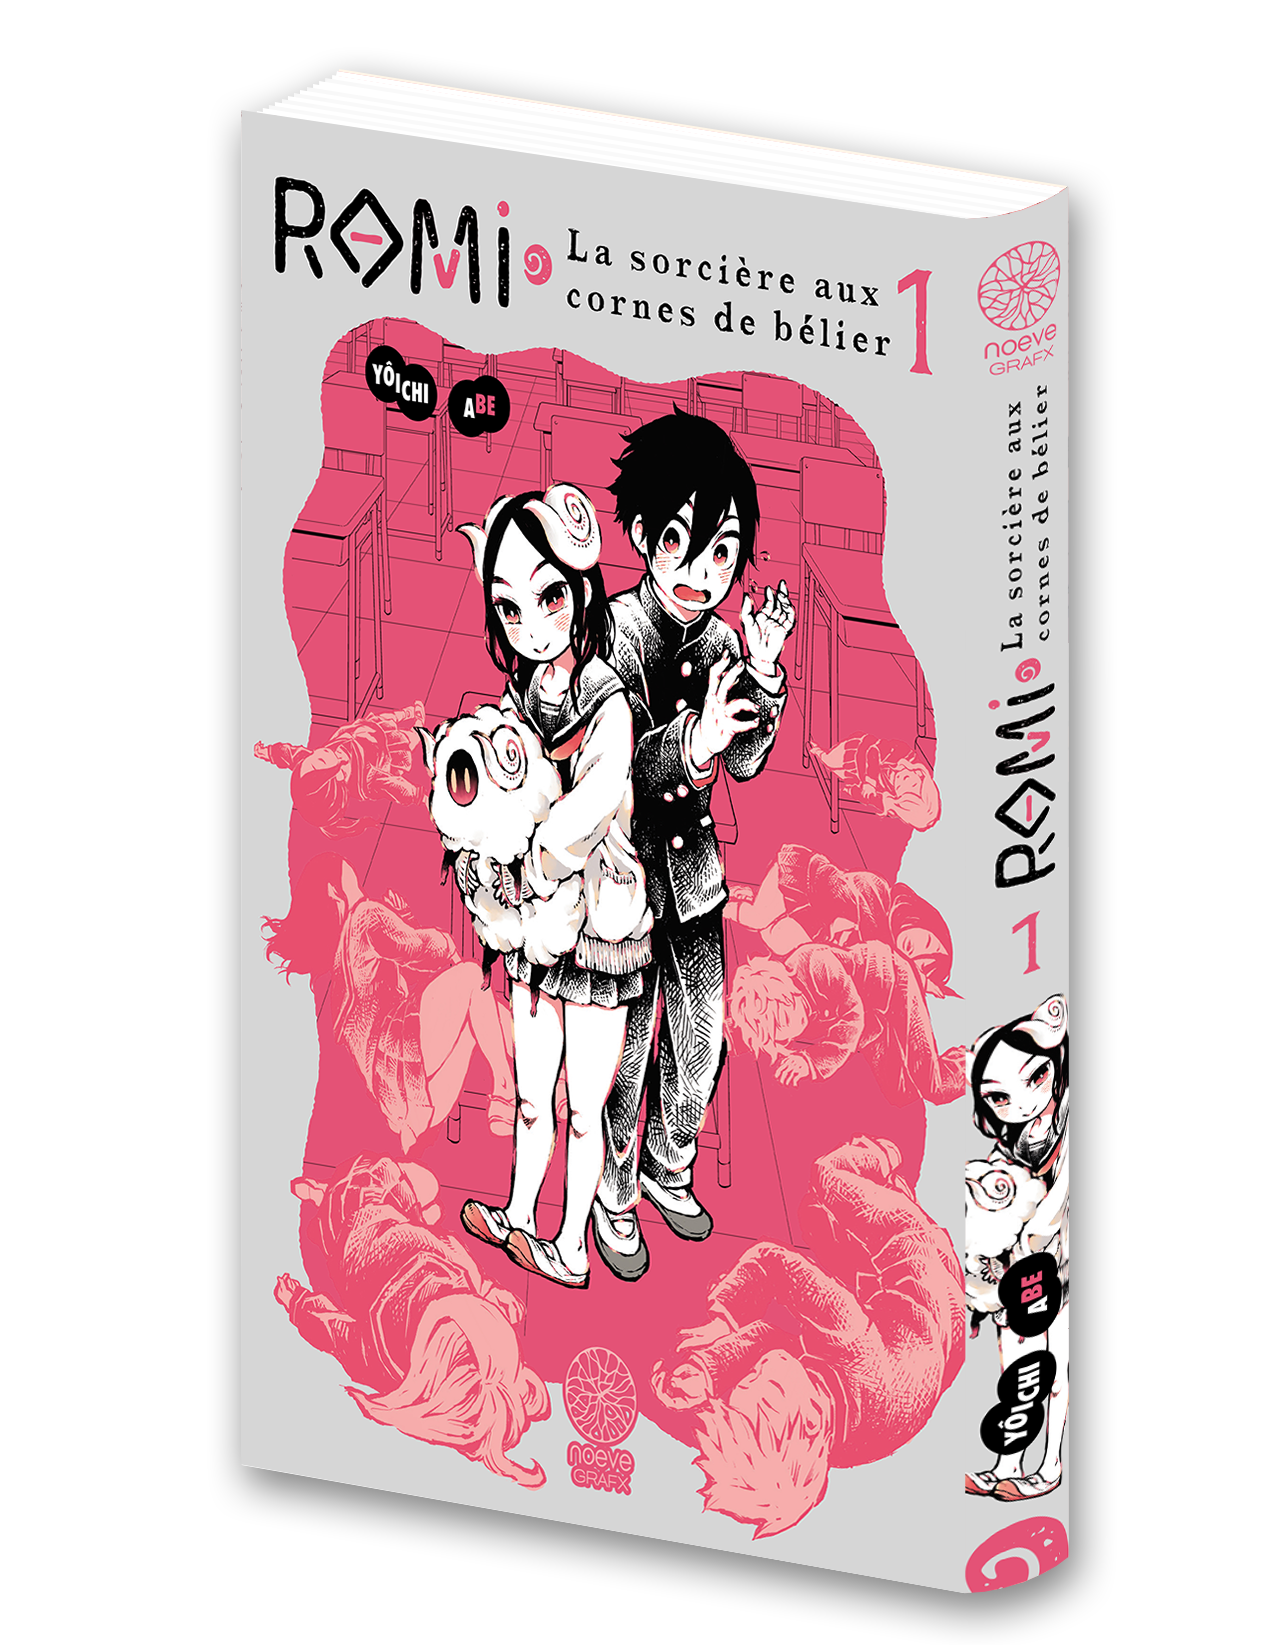 Visuel 3D du manga Romi, la sorcière aux cornes de bélier